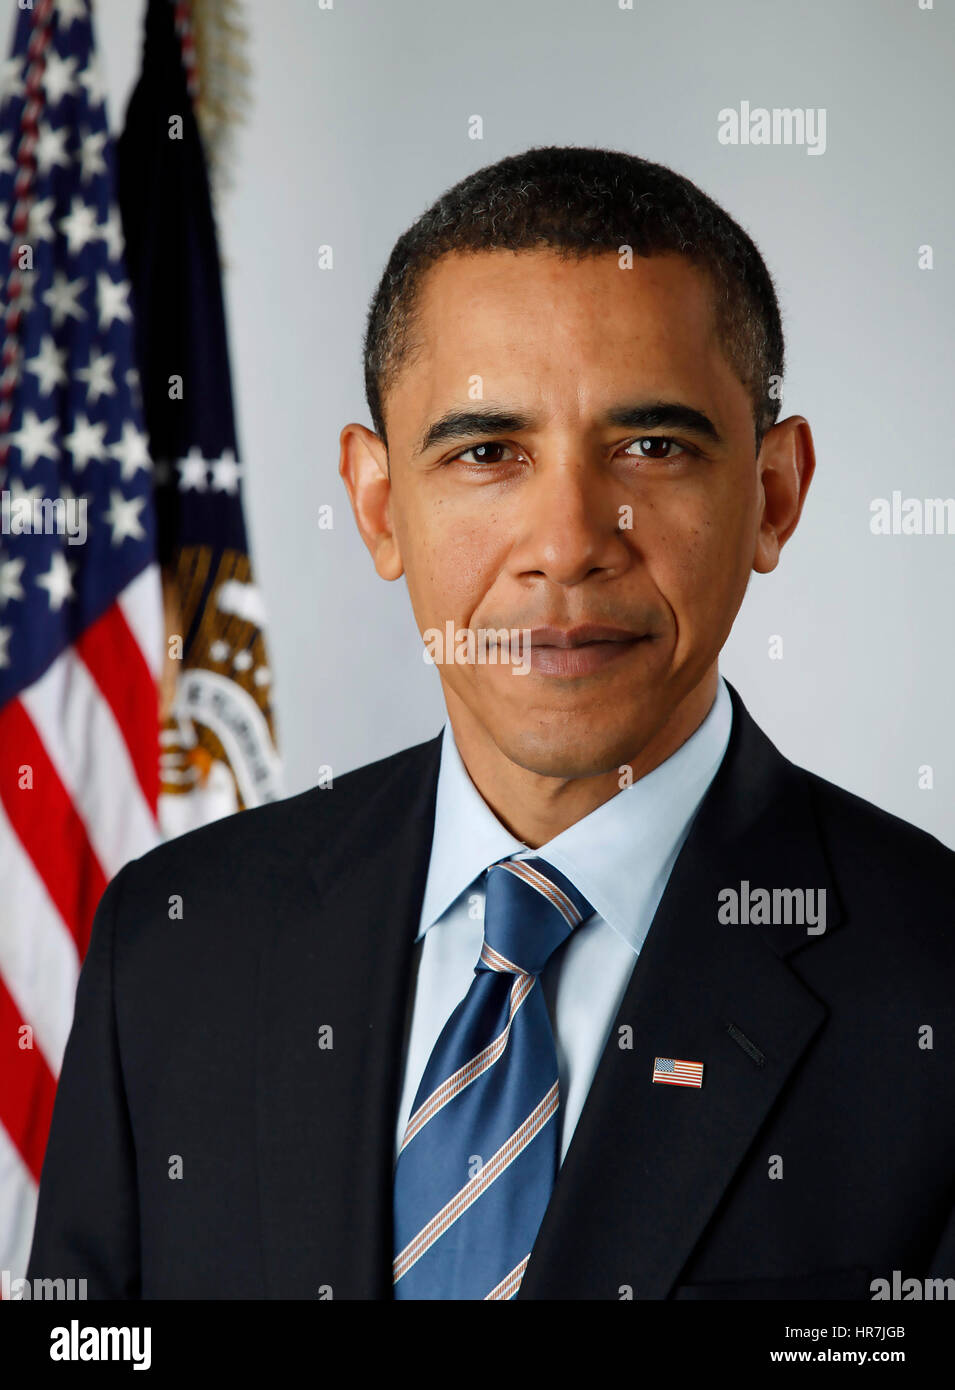 Le président élu Barack Obama portrait officiel le 13 janvier 2009. Photo : Pete Souza/White House (Photo officielle par Pete Souza) Banque D'Images